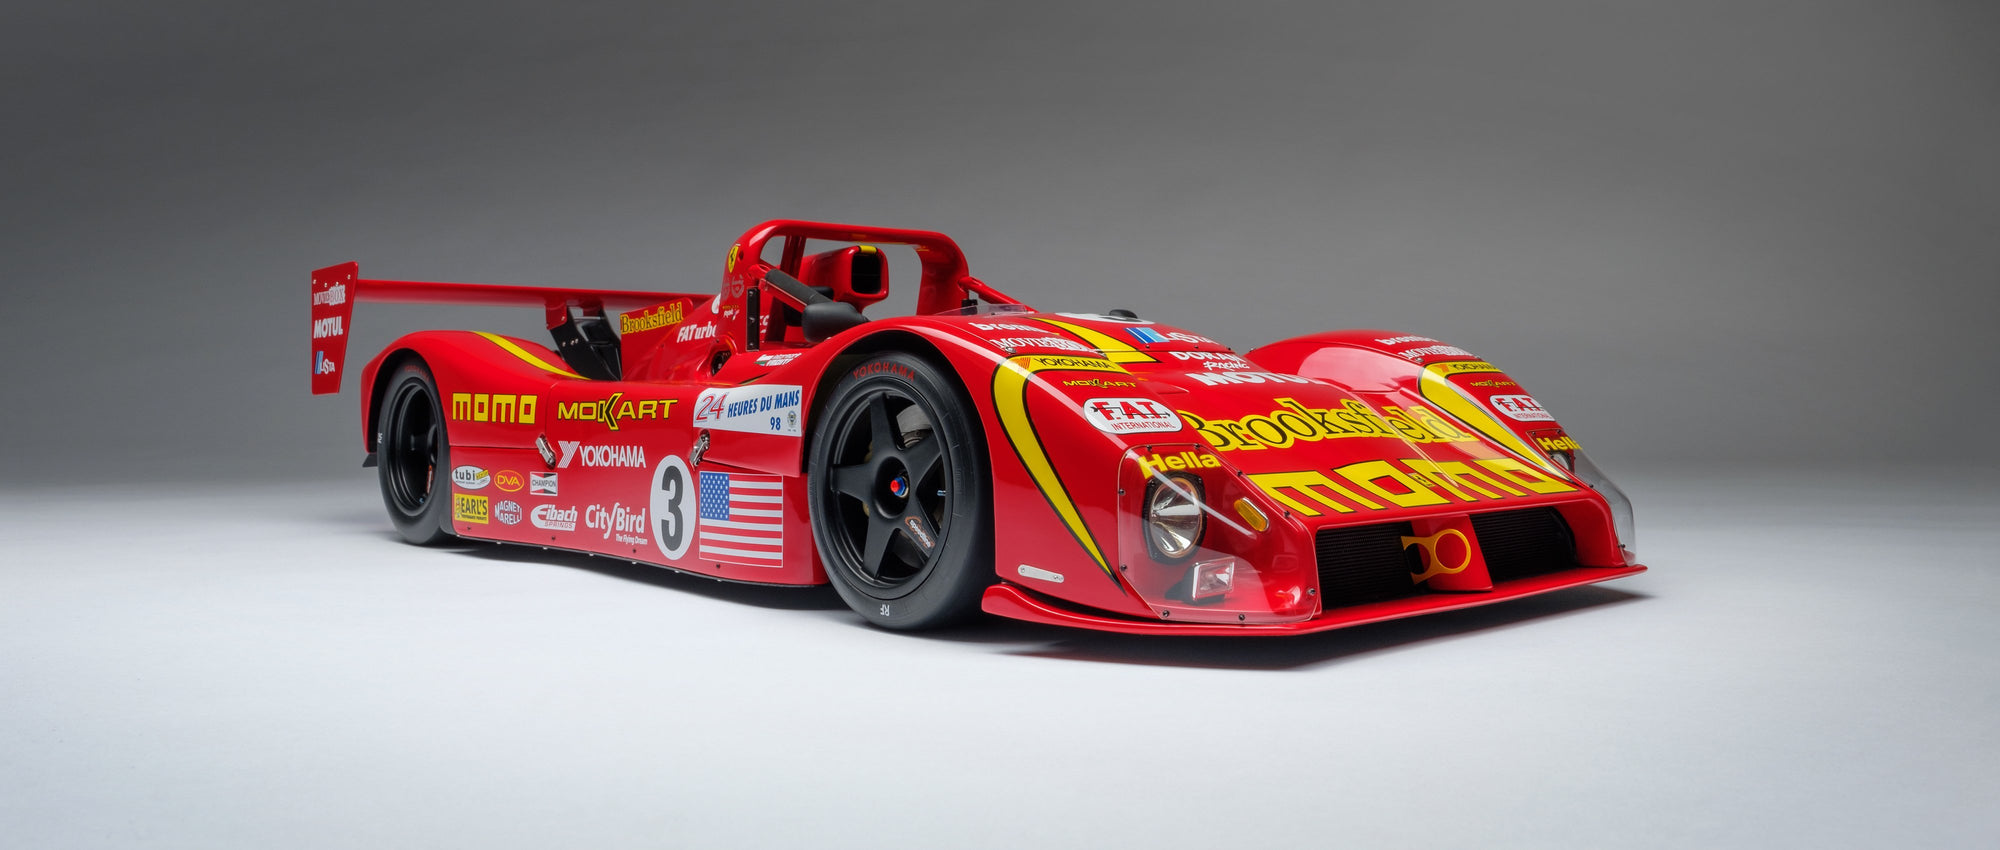 Ferrari F333 SP - 1998 Le Mans